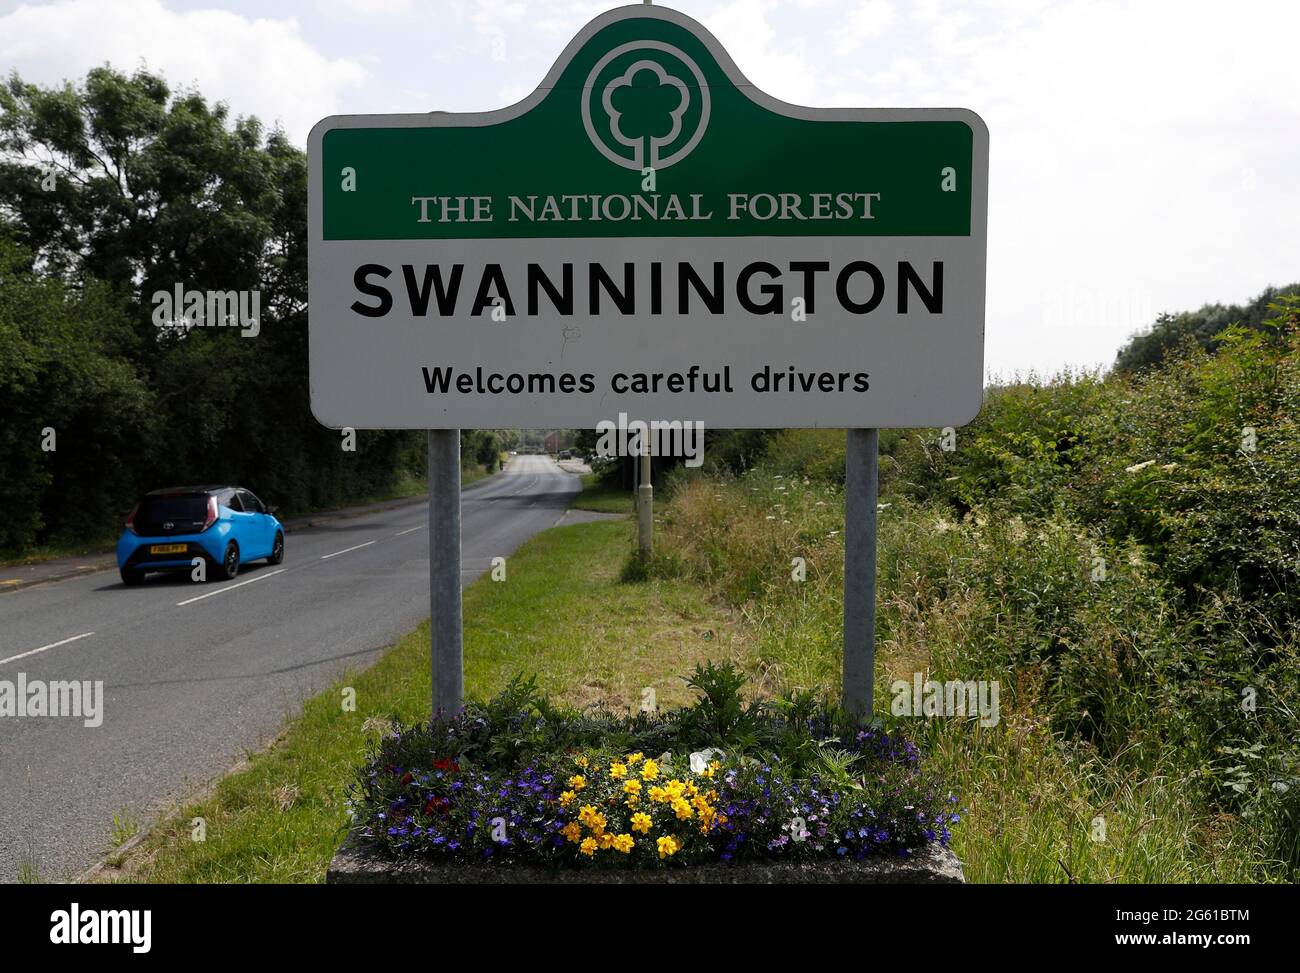 Swannington, Leicestershire, Regno Unito. 1 luglio 2021. Un cartello dà il benvenuto ai conducenti attenti. Swannington è un ex villaggio minerario situato tra Coalville e. Foto Stock